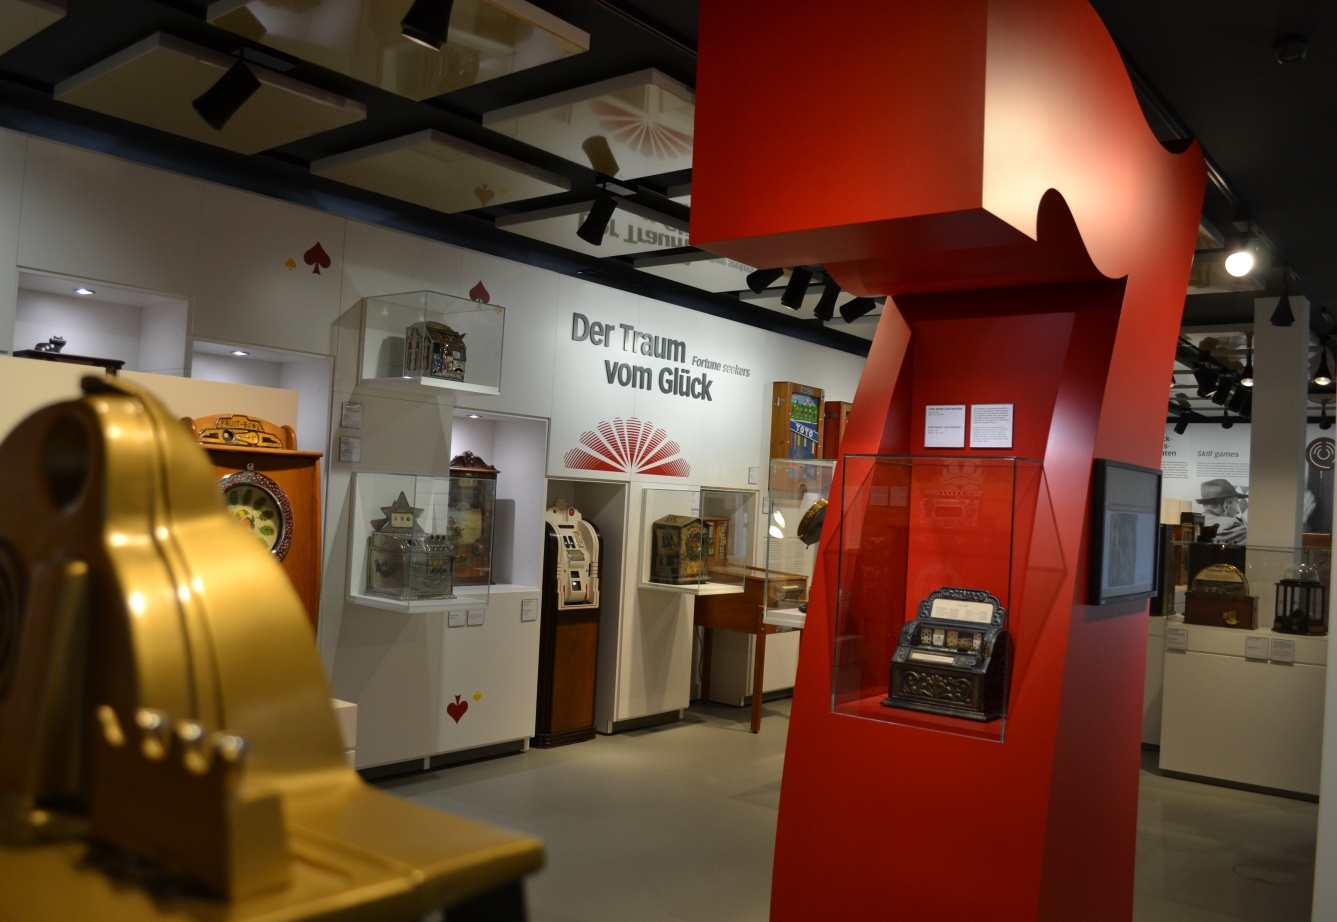 Deutsches Automatenmuseum Espelkamp - Ausstellung "Glück"